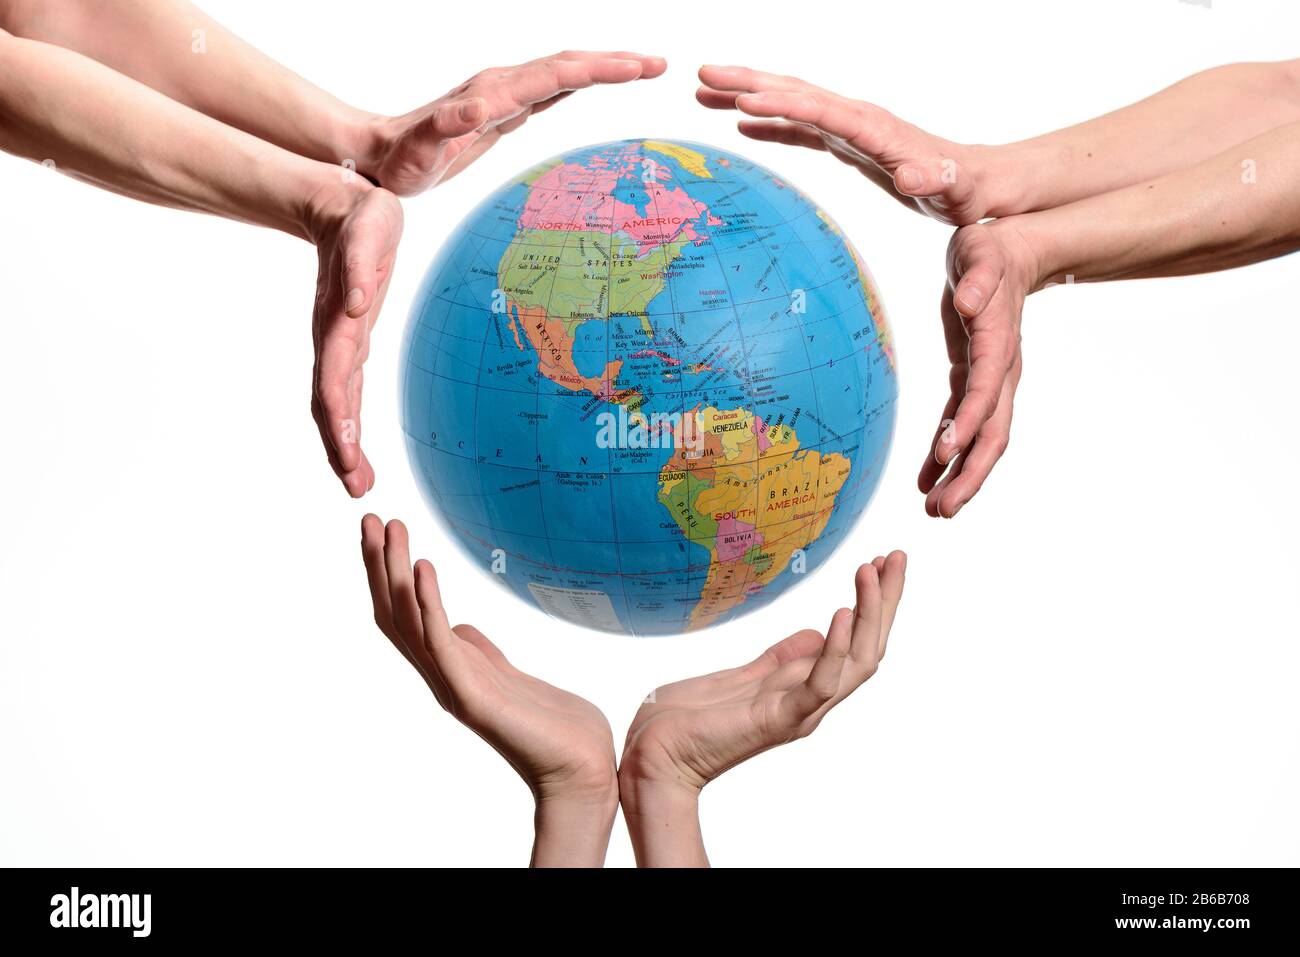 Hände, Die Den Erdball Halten. Konzeptbild zum Speichern oder schützen des Planeten, isoliert auf weißem Hintergrund. Stockfoto